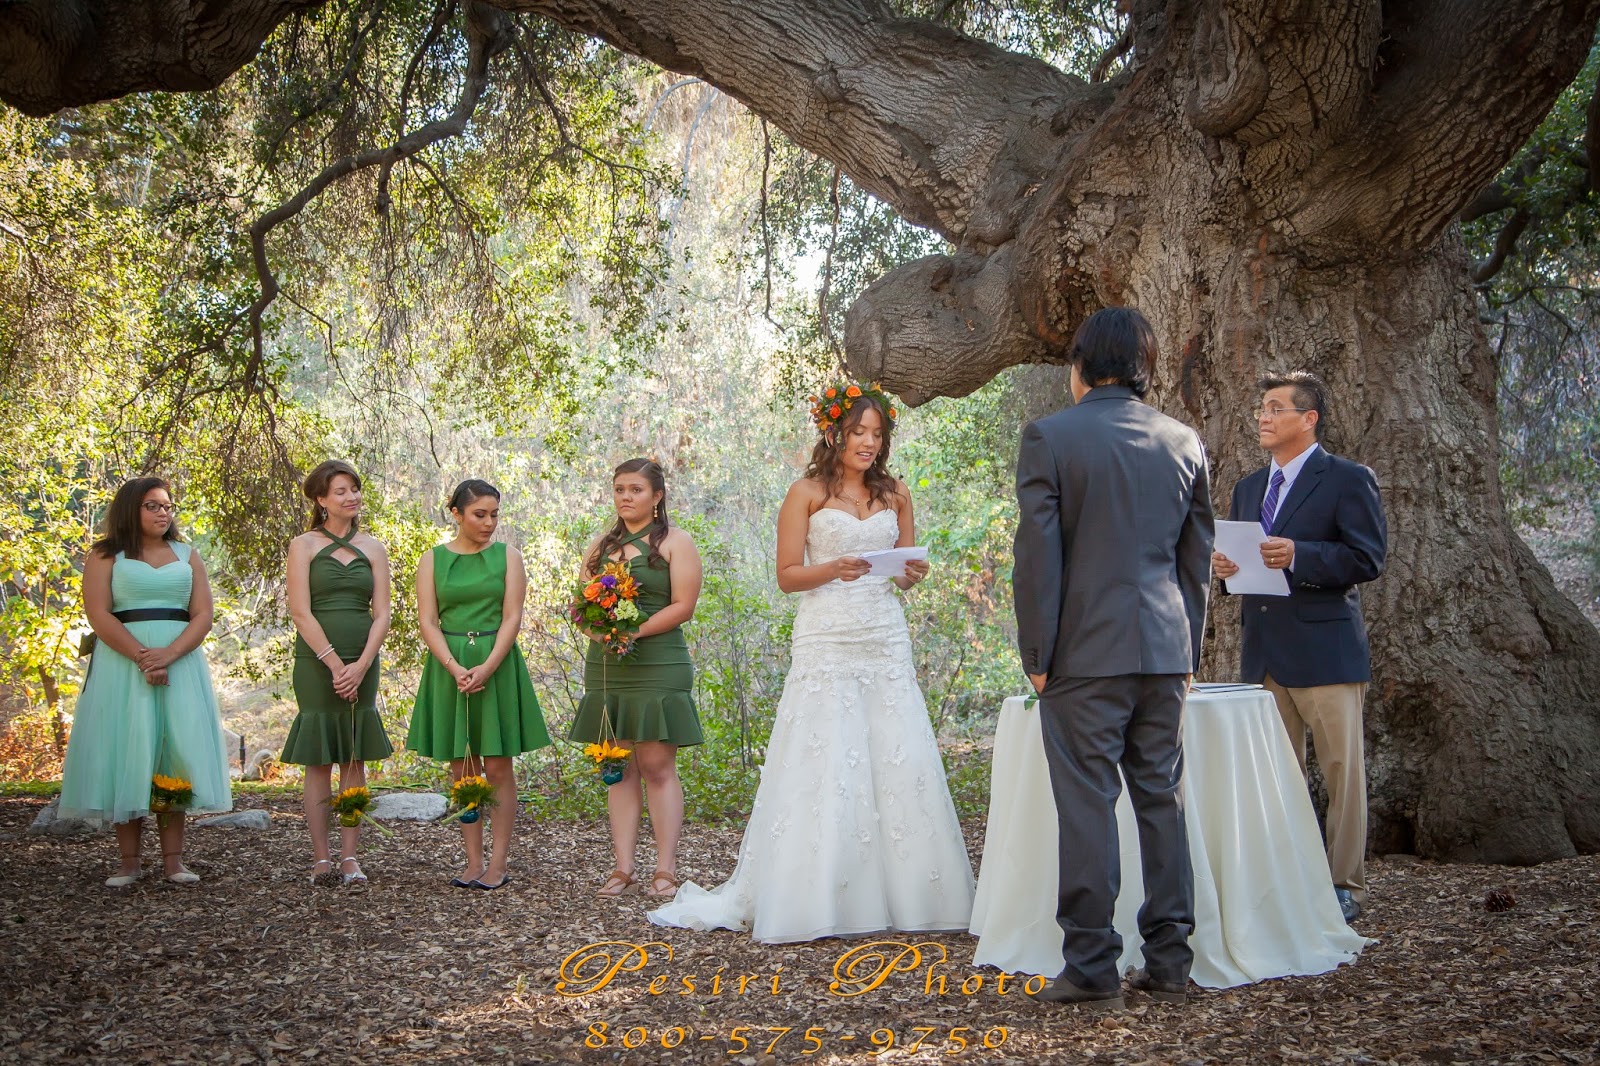 Pesiriphotosblogspot Rancho Santa Ana Botanical Garden Wedding By